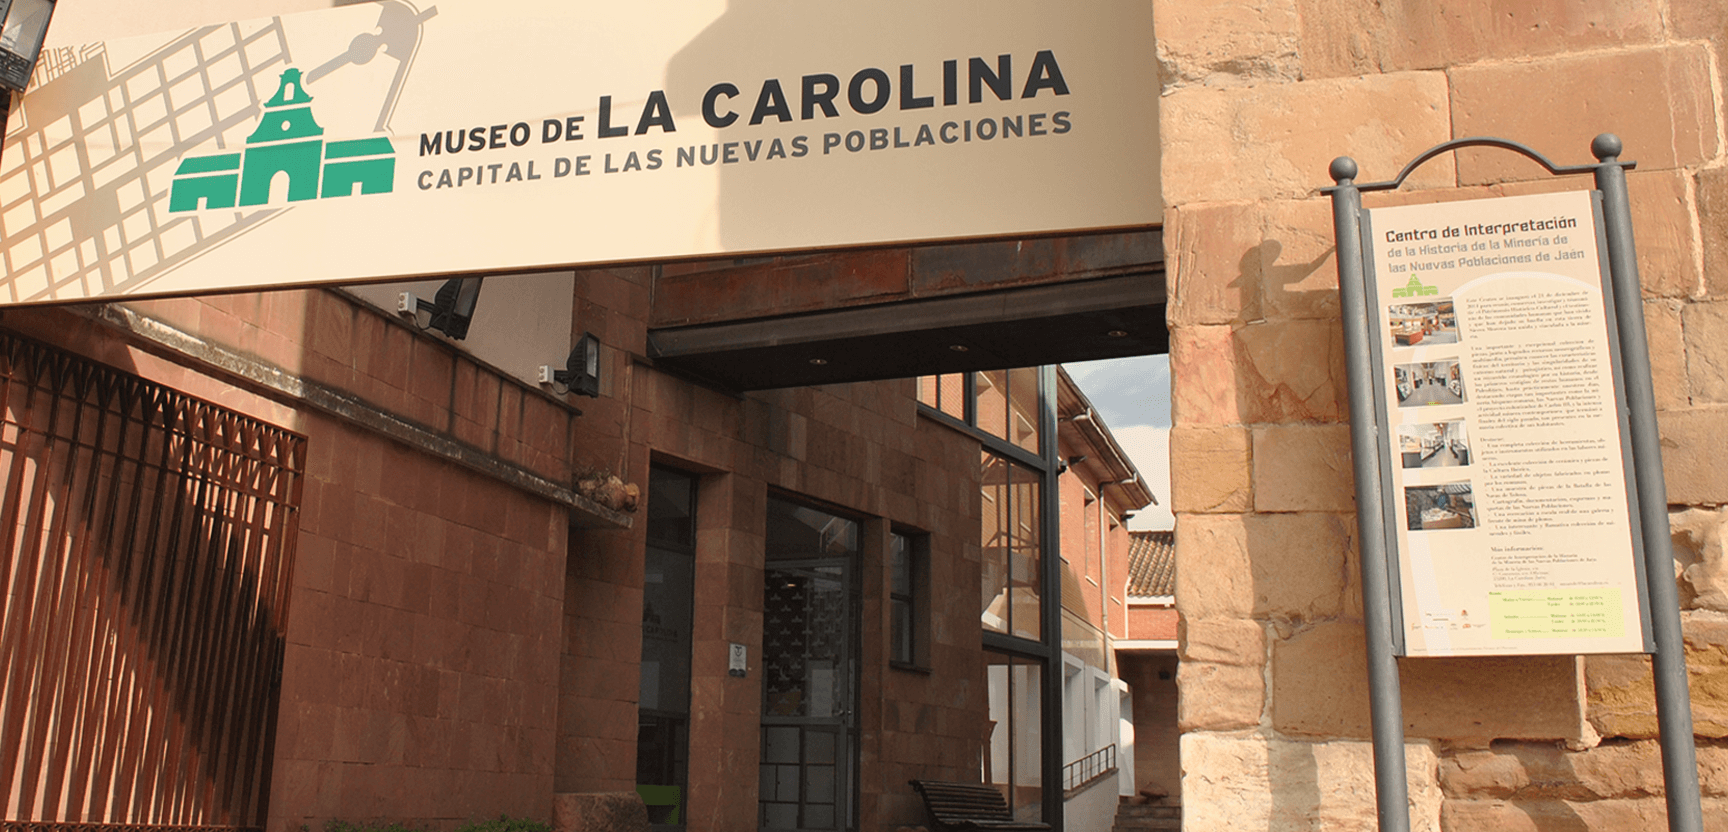 MUSEO DE LA CAROLINA. CAPITAL DE LAS NUEVAS POBLACIONES		Carolina (La)	Jaén